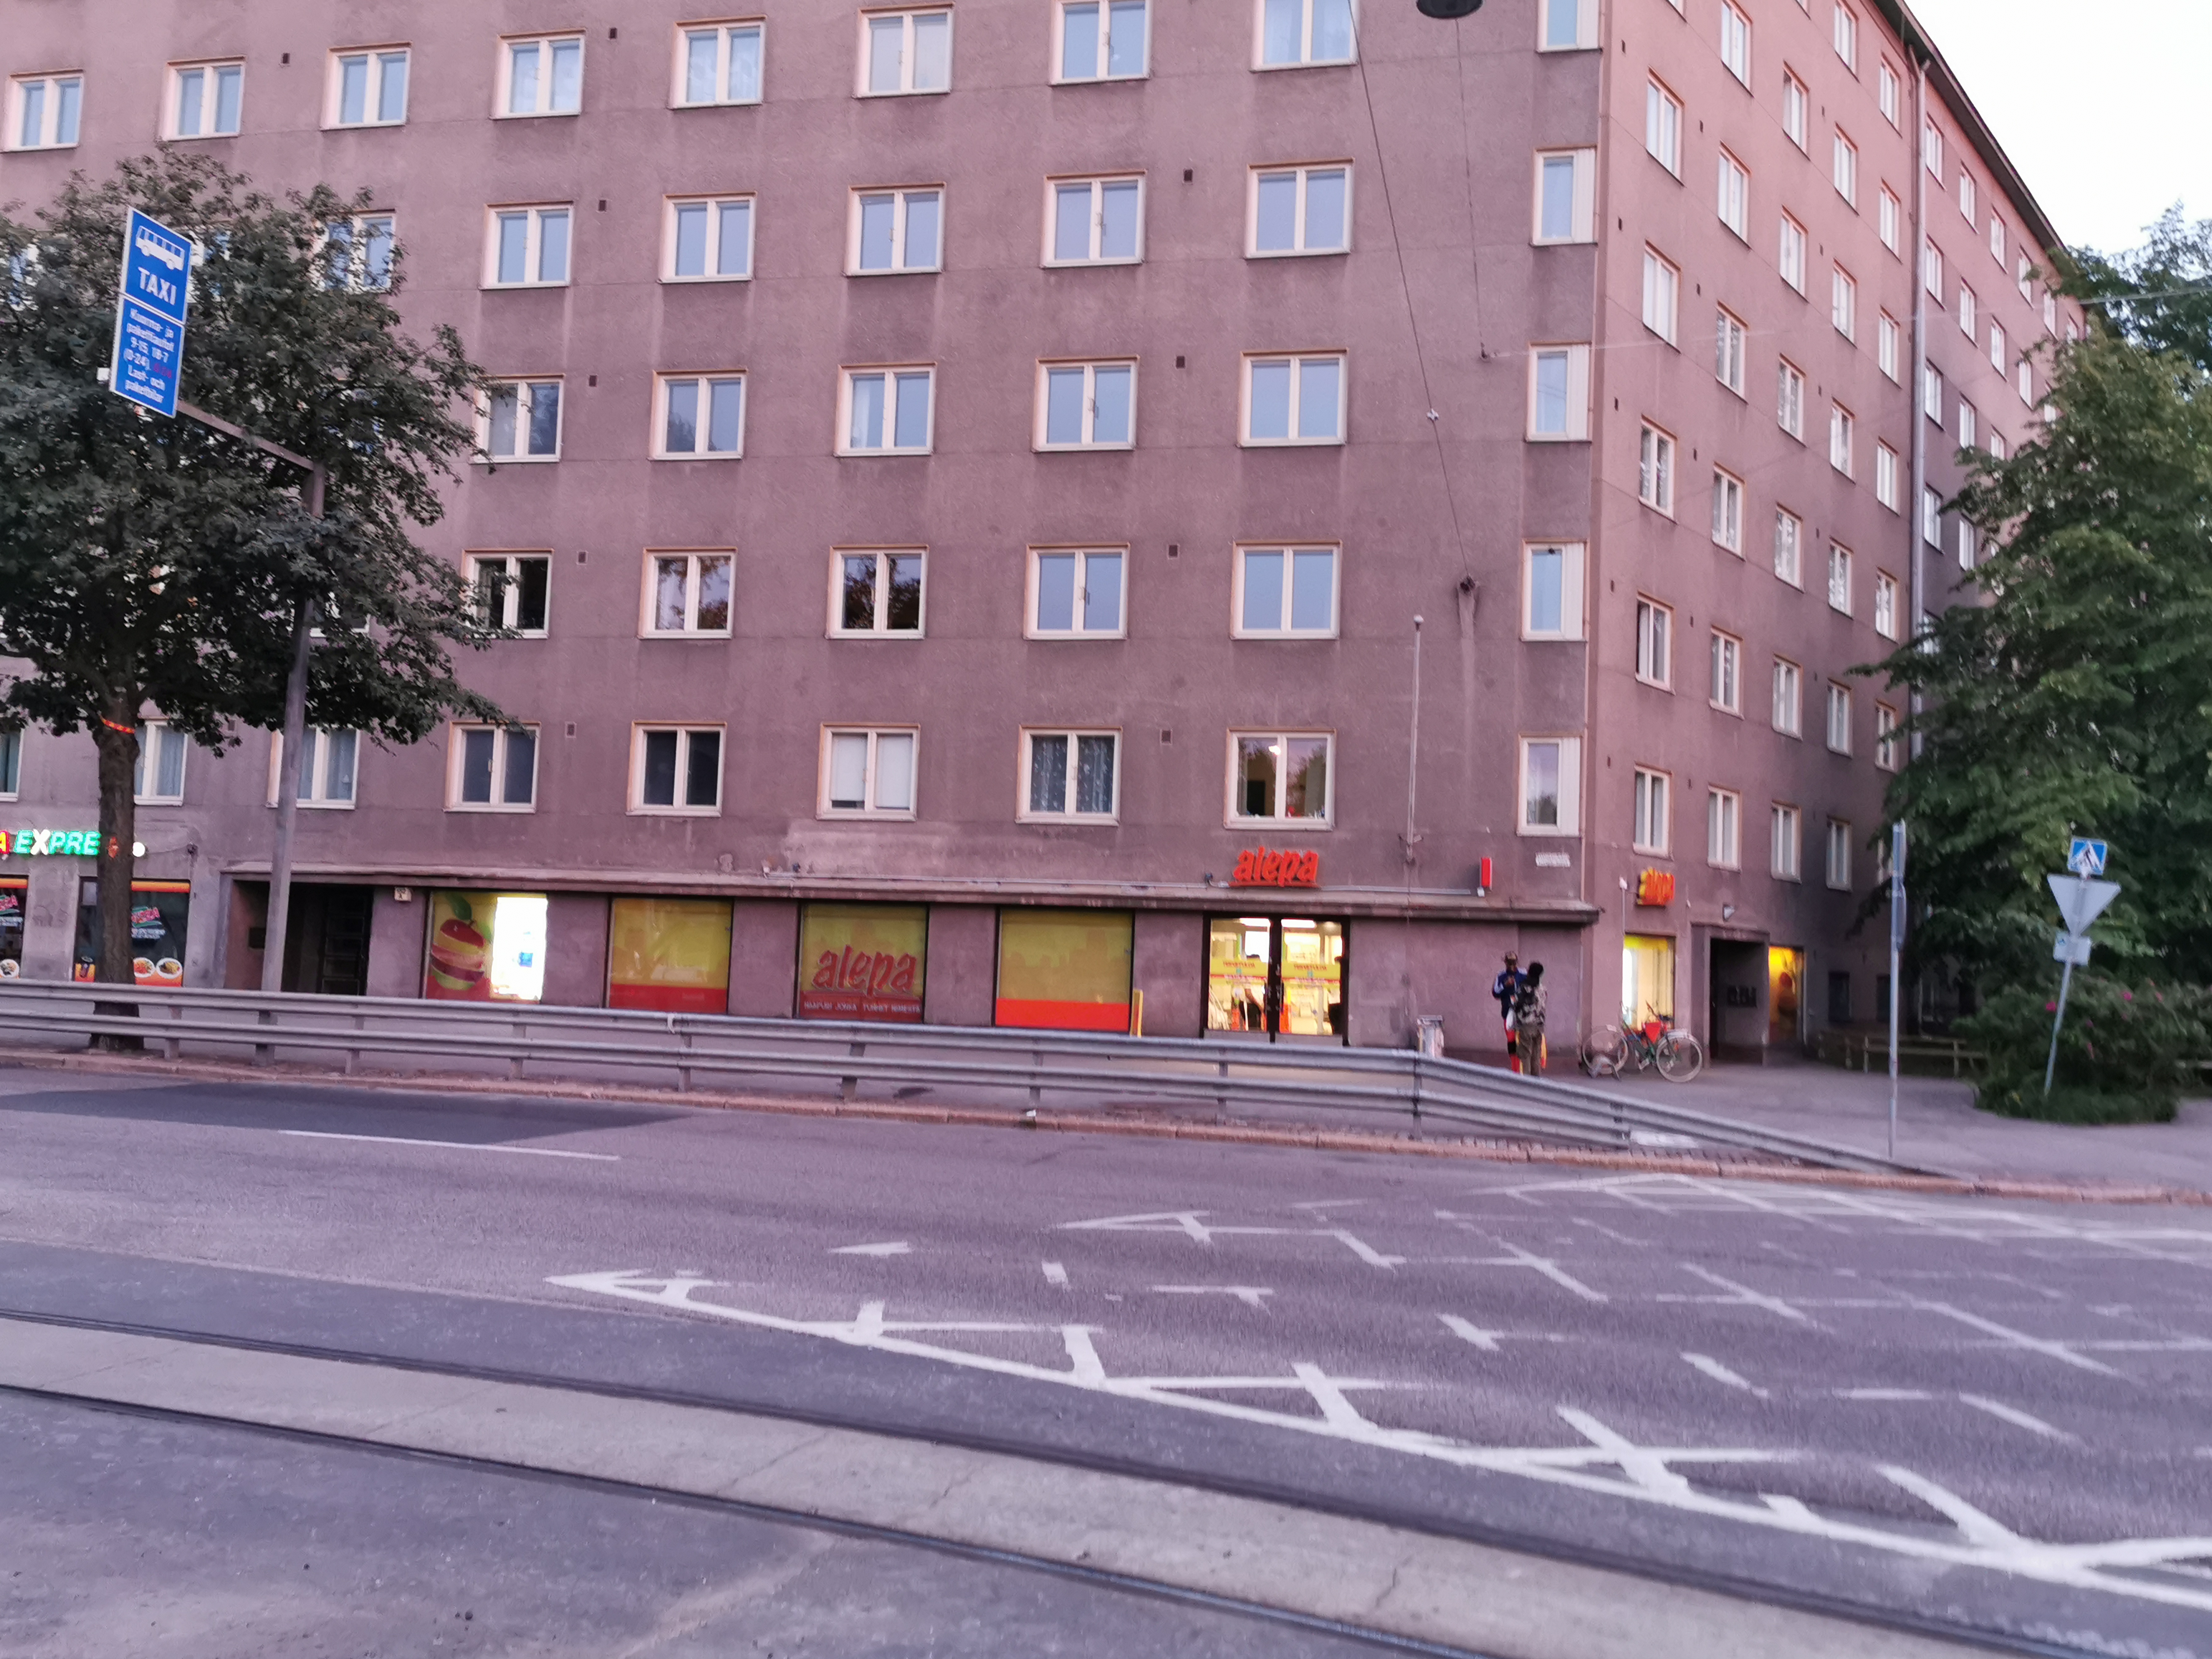 Mannerheimintie 152. - Kuusitie 2. Elannon myymälä, lihamyymälä, Helsingin osakepankki. Kuvan vasemmassa reunassa Renault Frégate -henkilöauto. rephoto